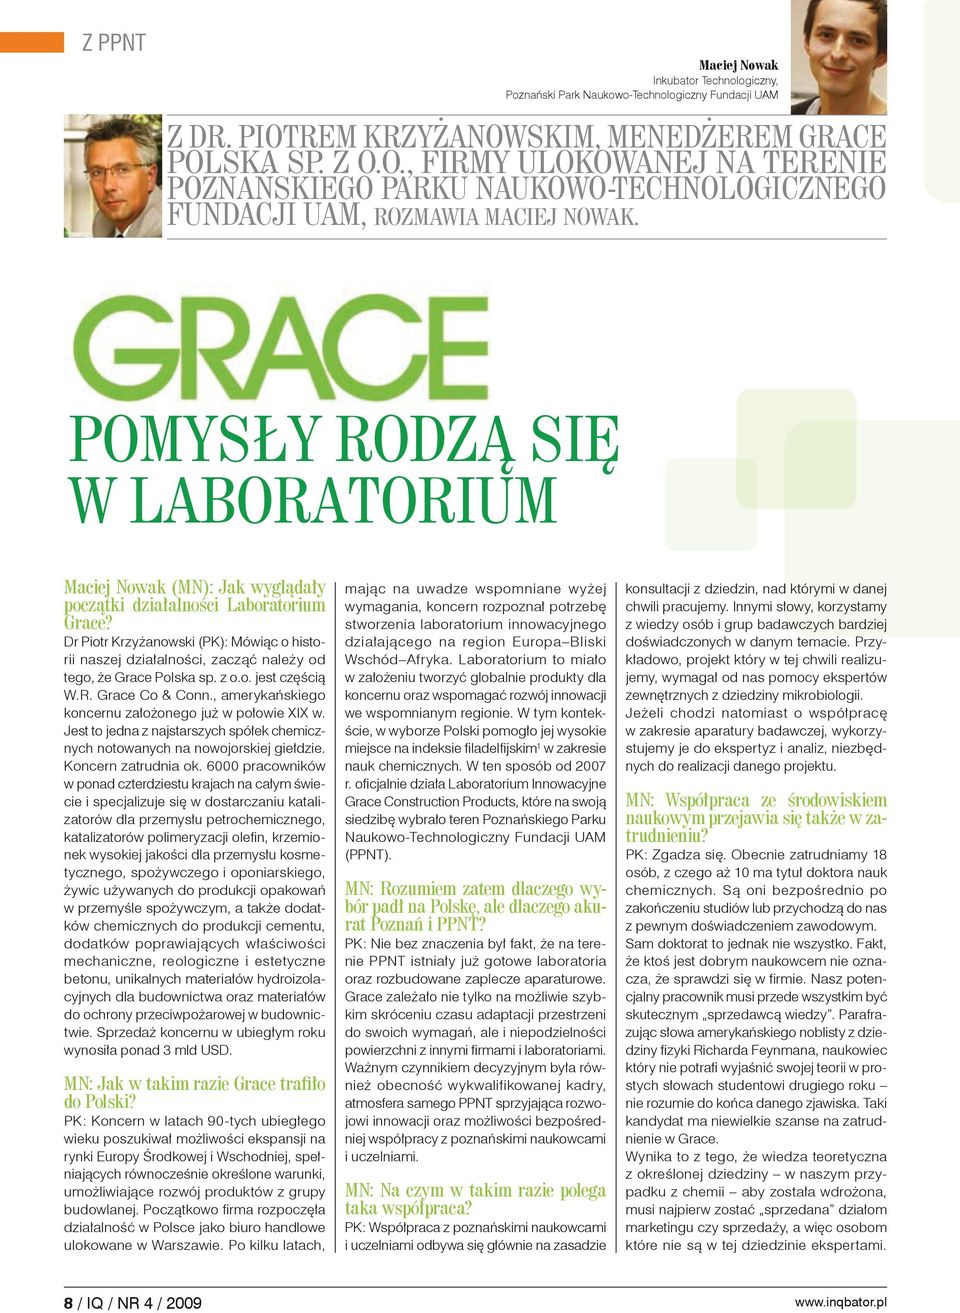 Pomysły rodzą się w laboratorium Maciej Nowak (MN): Jak wyglądały początki działalności Laboratorium Grace?